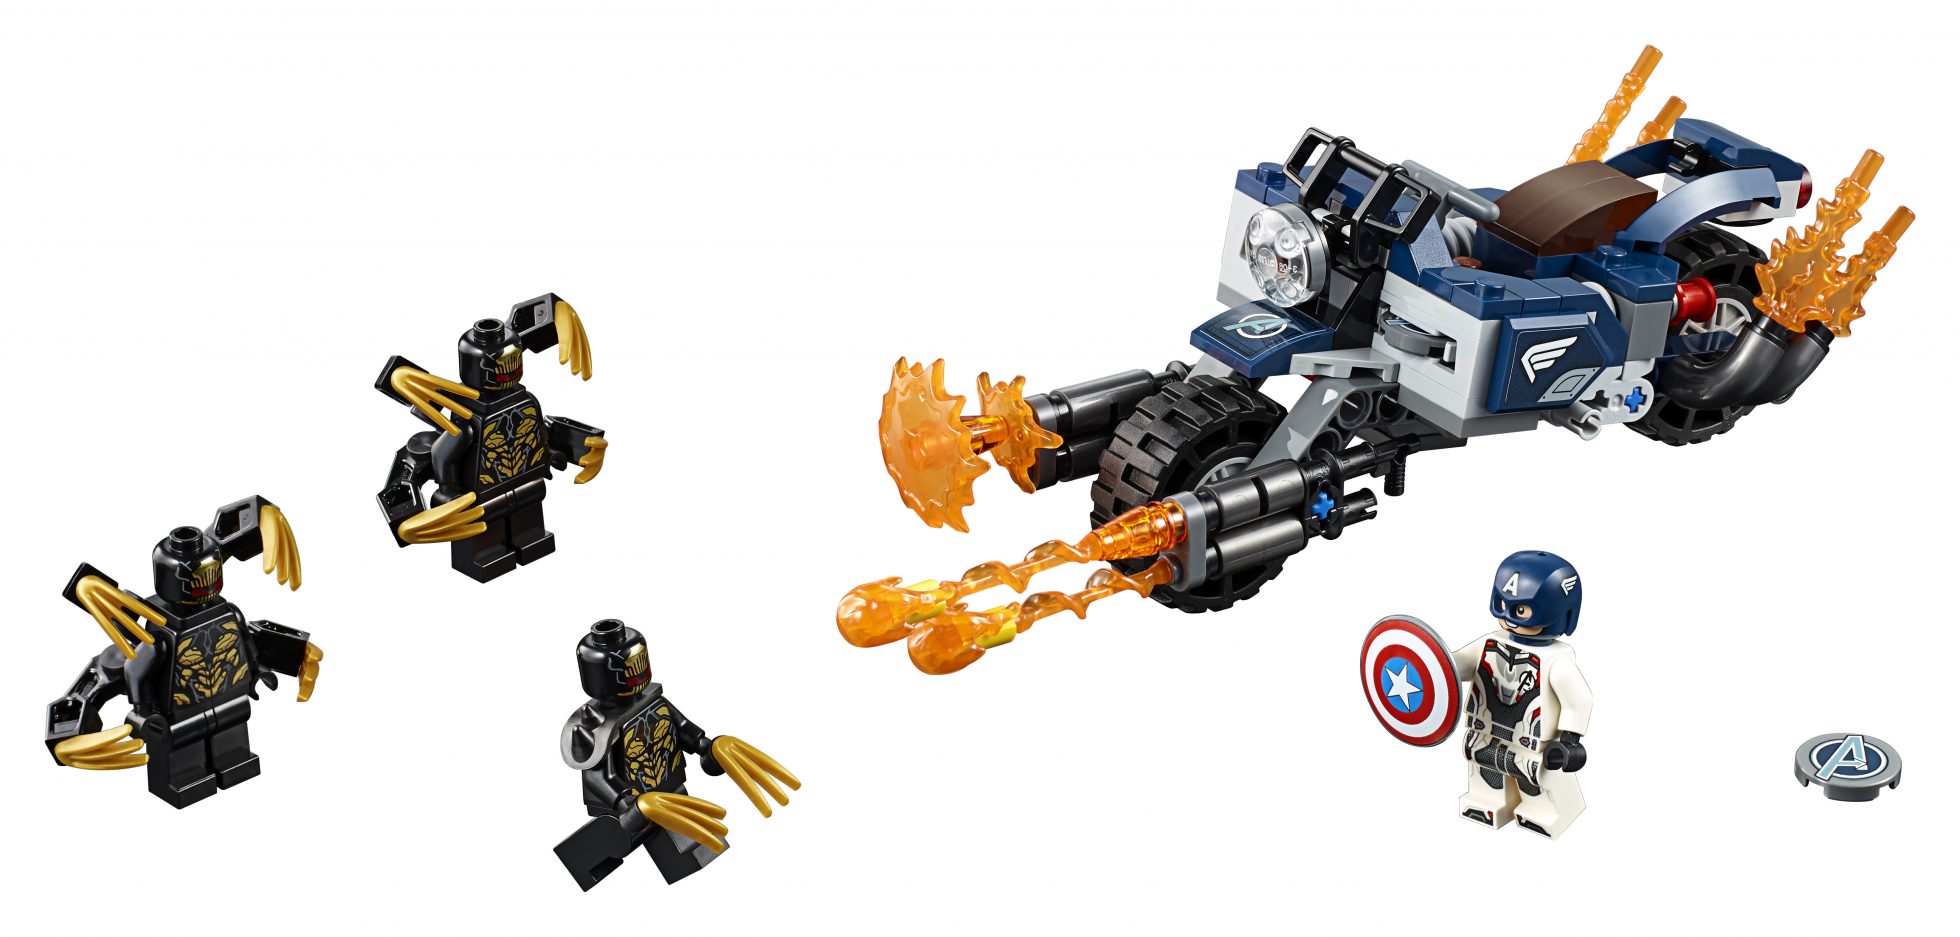 Marvel Avengers: Endgame LEGO Set - Captain America: Outriders Attack